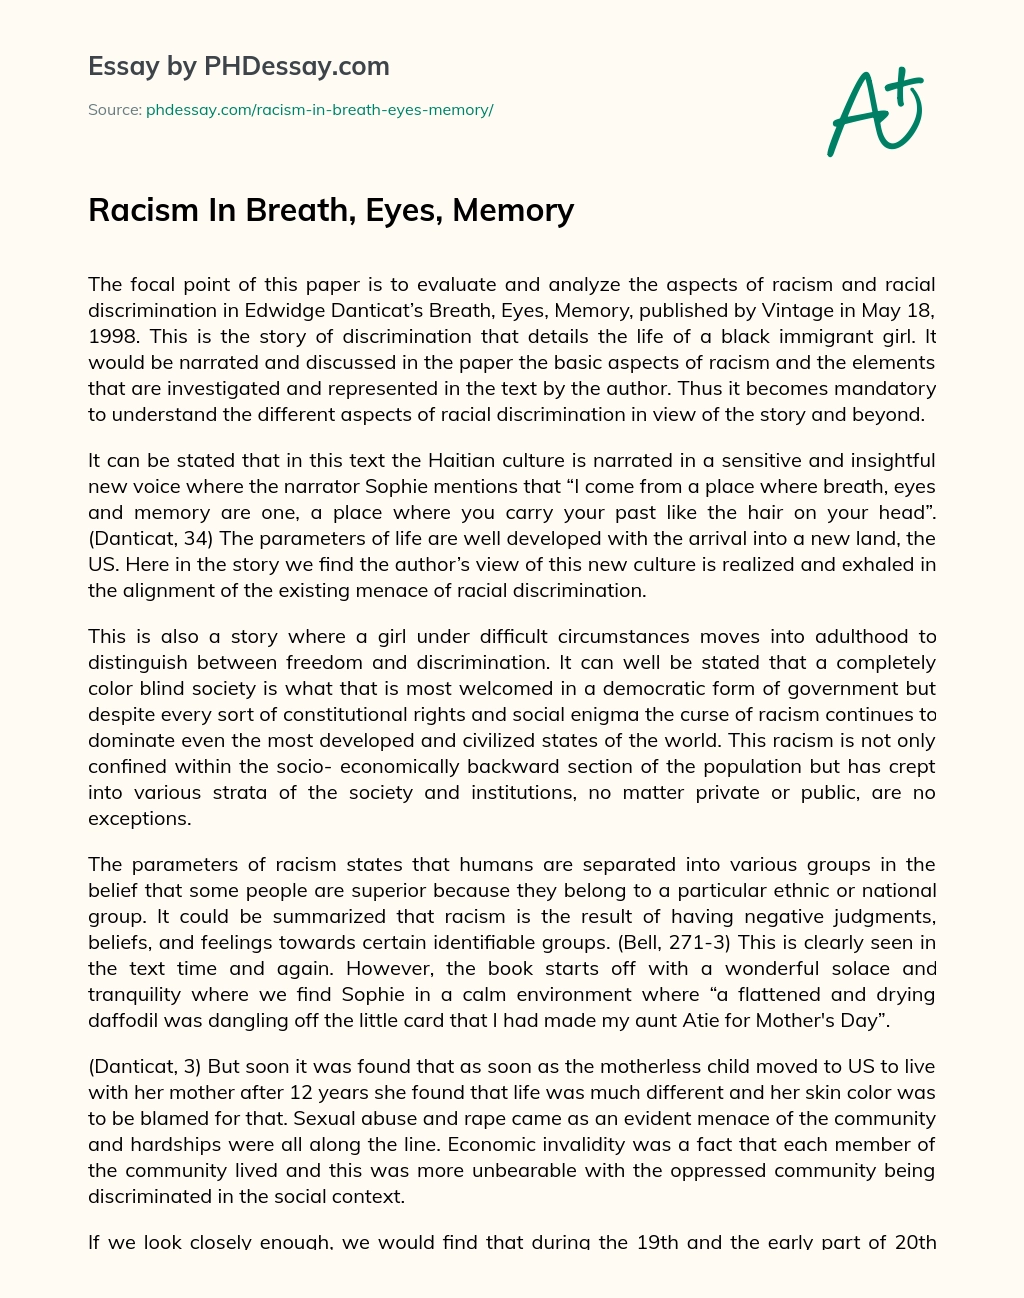 Racism In Breath, Eyes, Memory essay